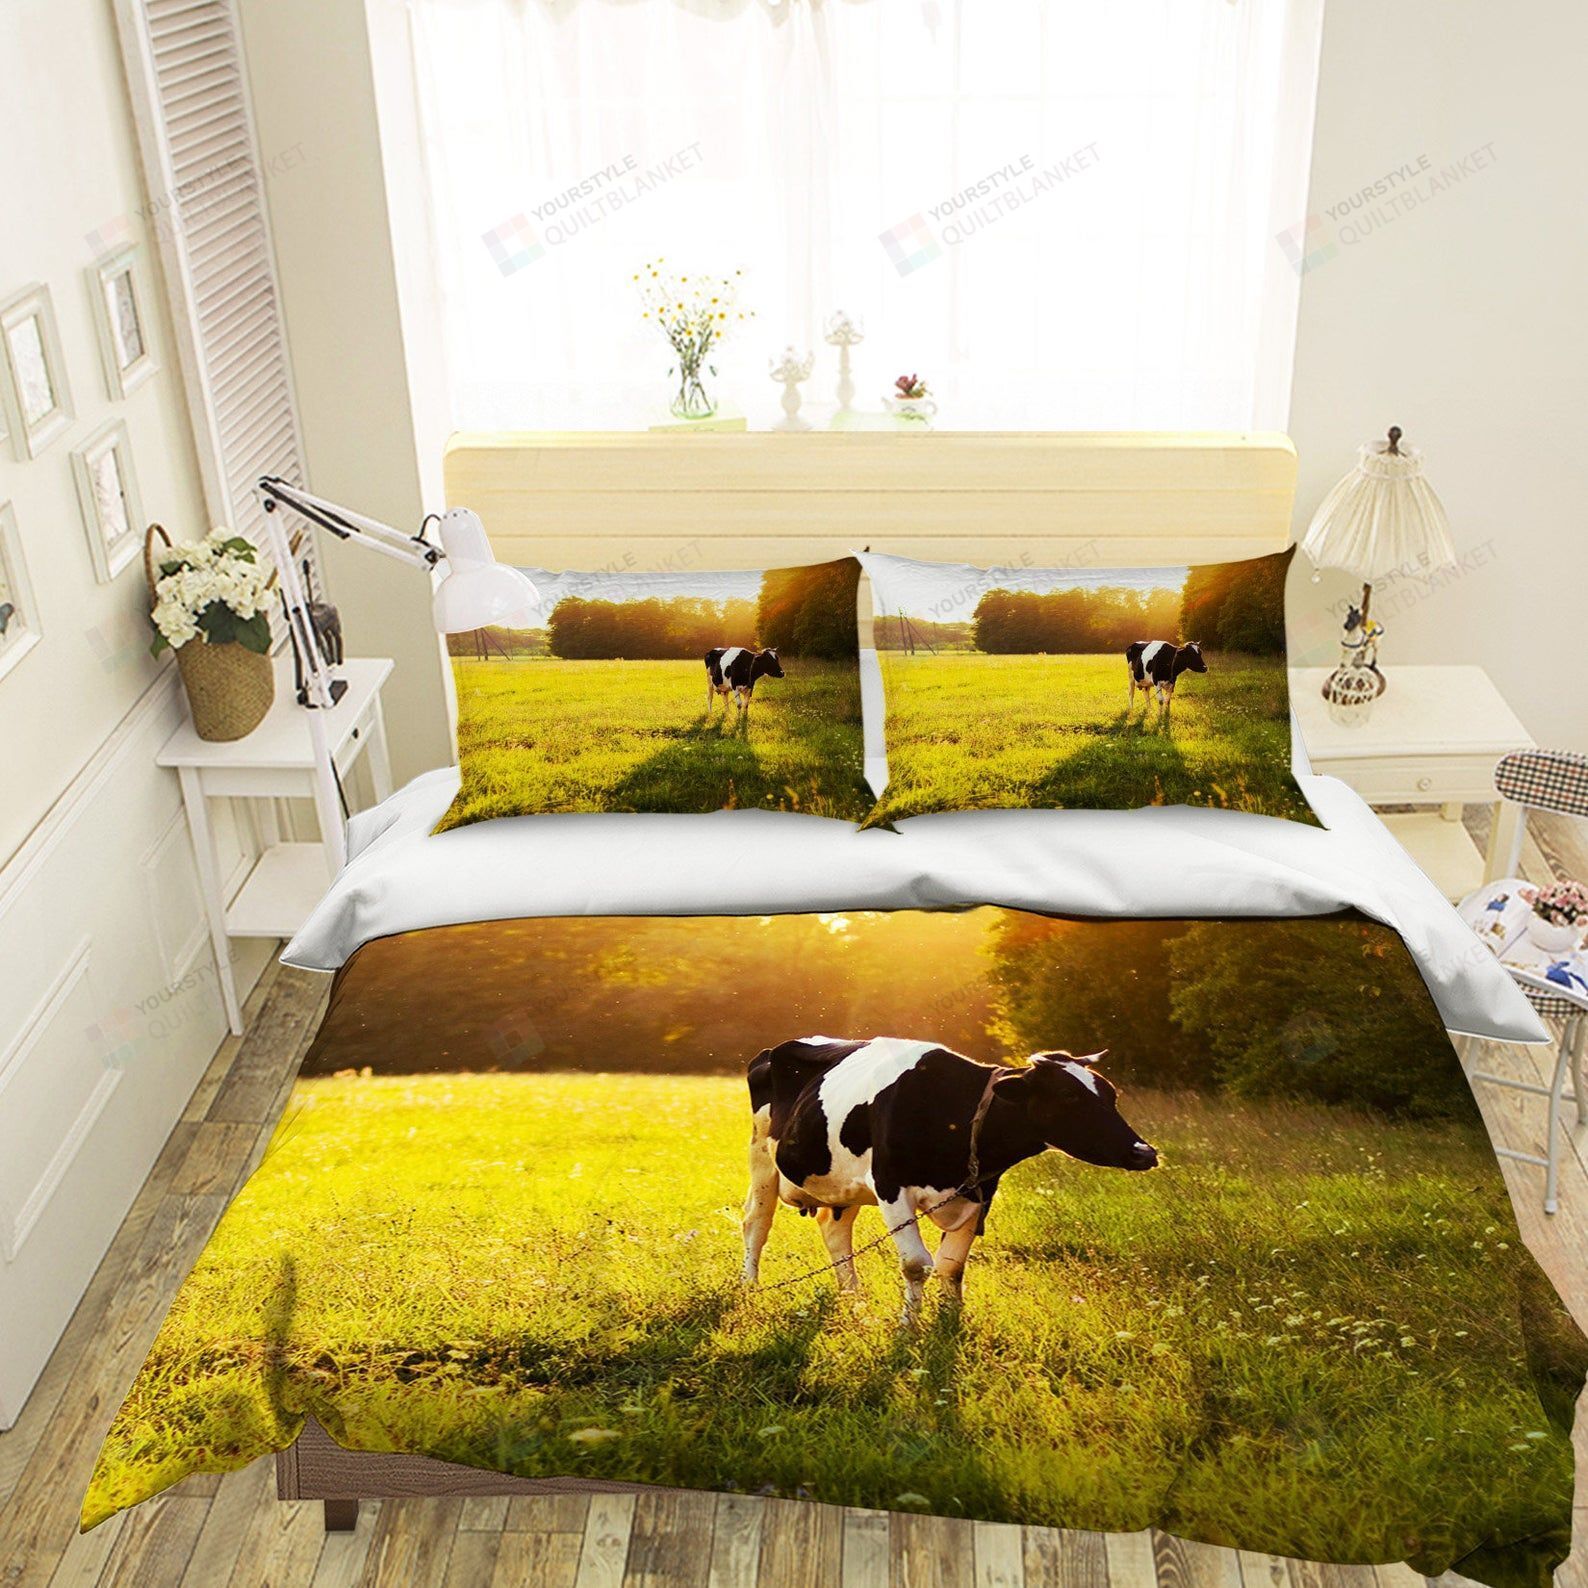 3D Cow Bedding Set Bed Sheets Spread Comforter Duvet Cover Bedding Sets